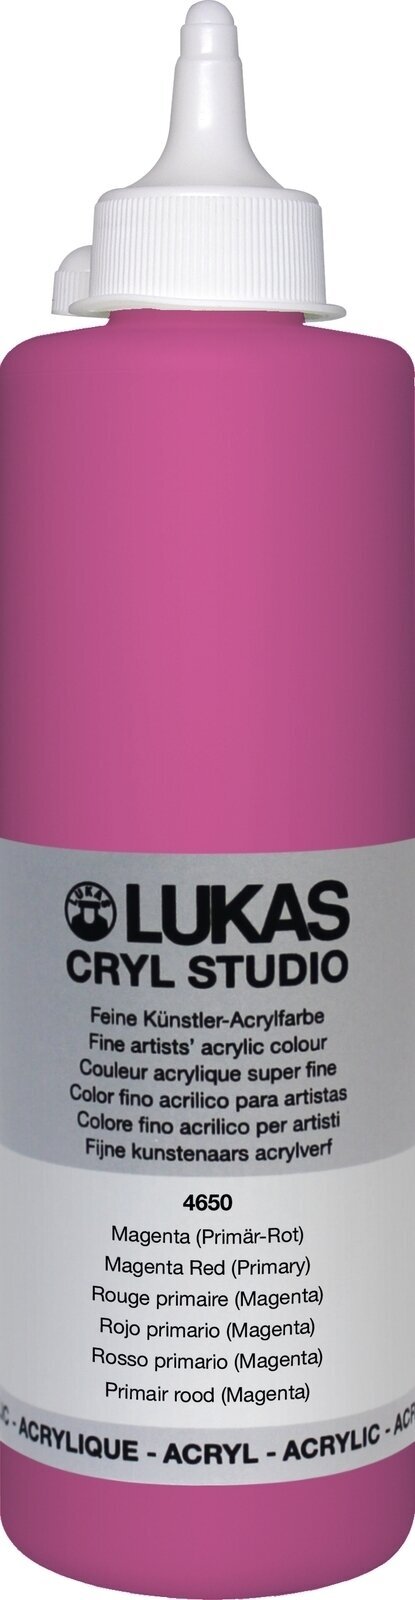 Culoare acrilică Lukas Cryl Studio Acrylic Paint Plastic Bottle Vopsea acrilică Magenta Red (Primary) 500 ml 1 buc